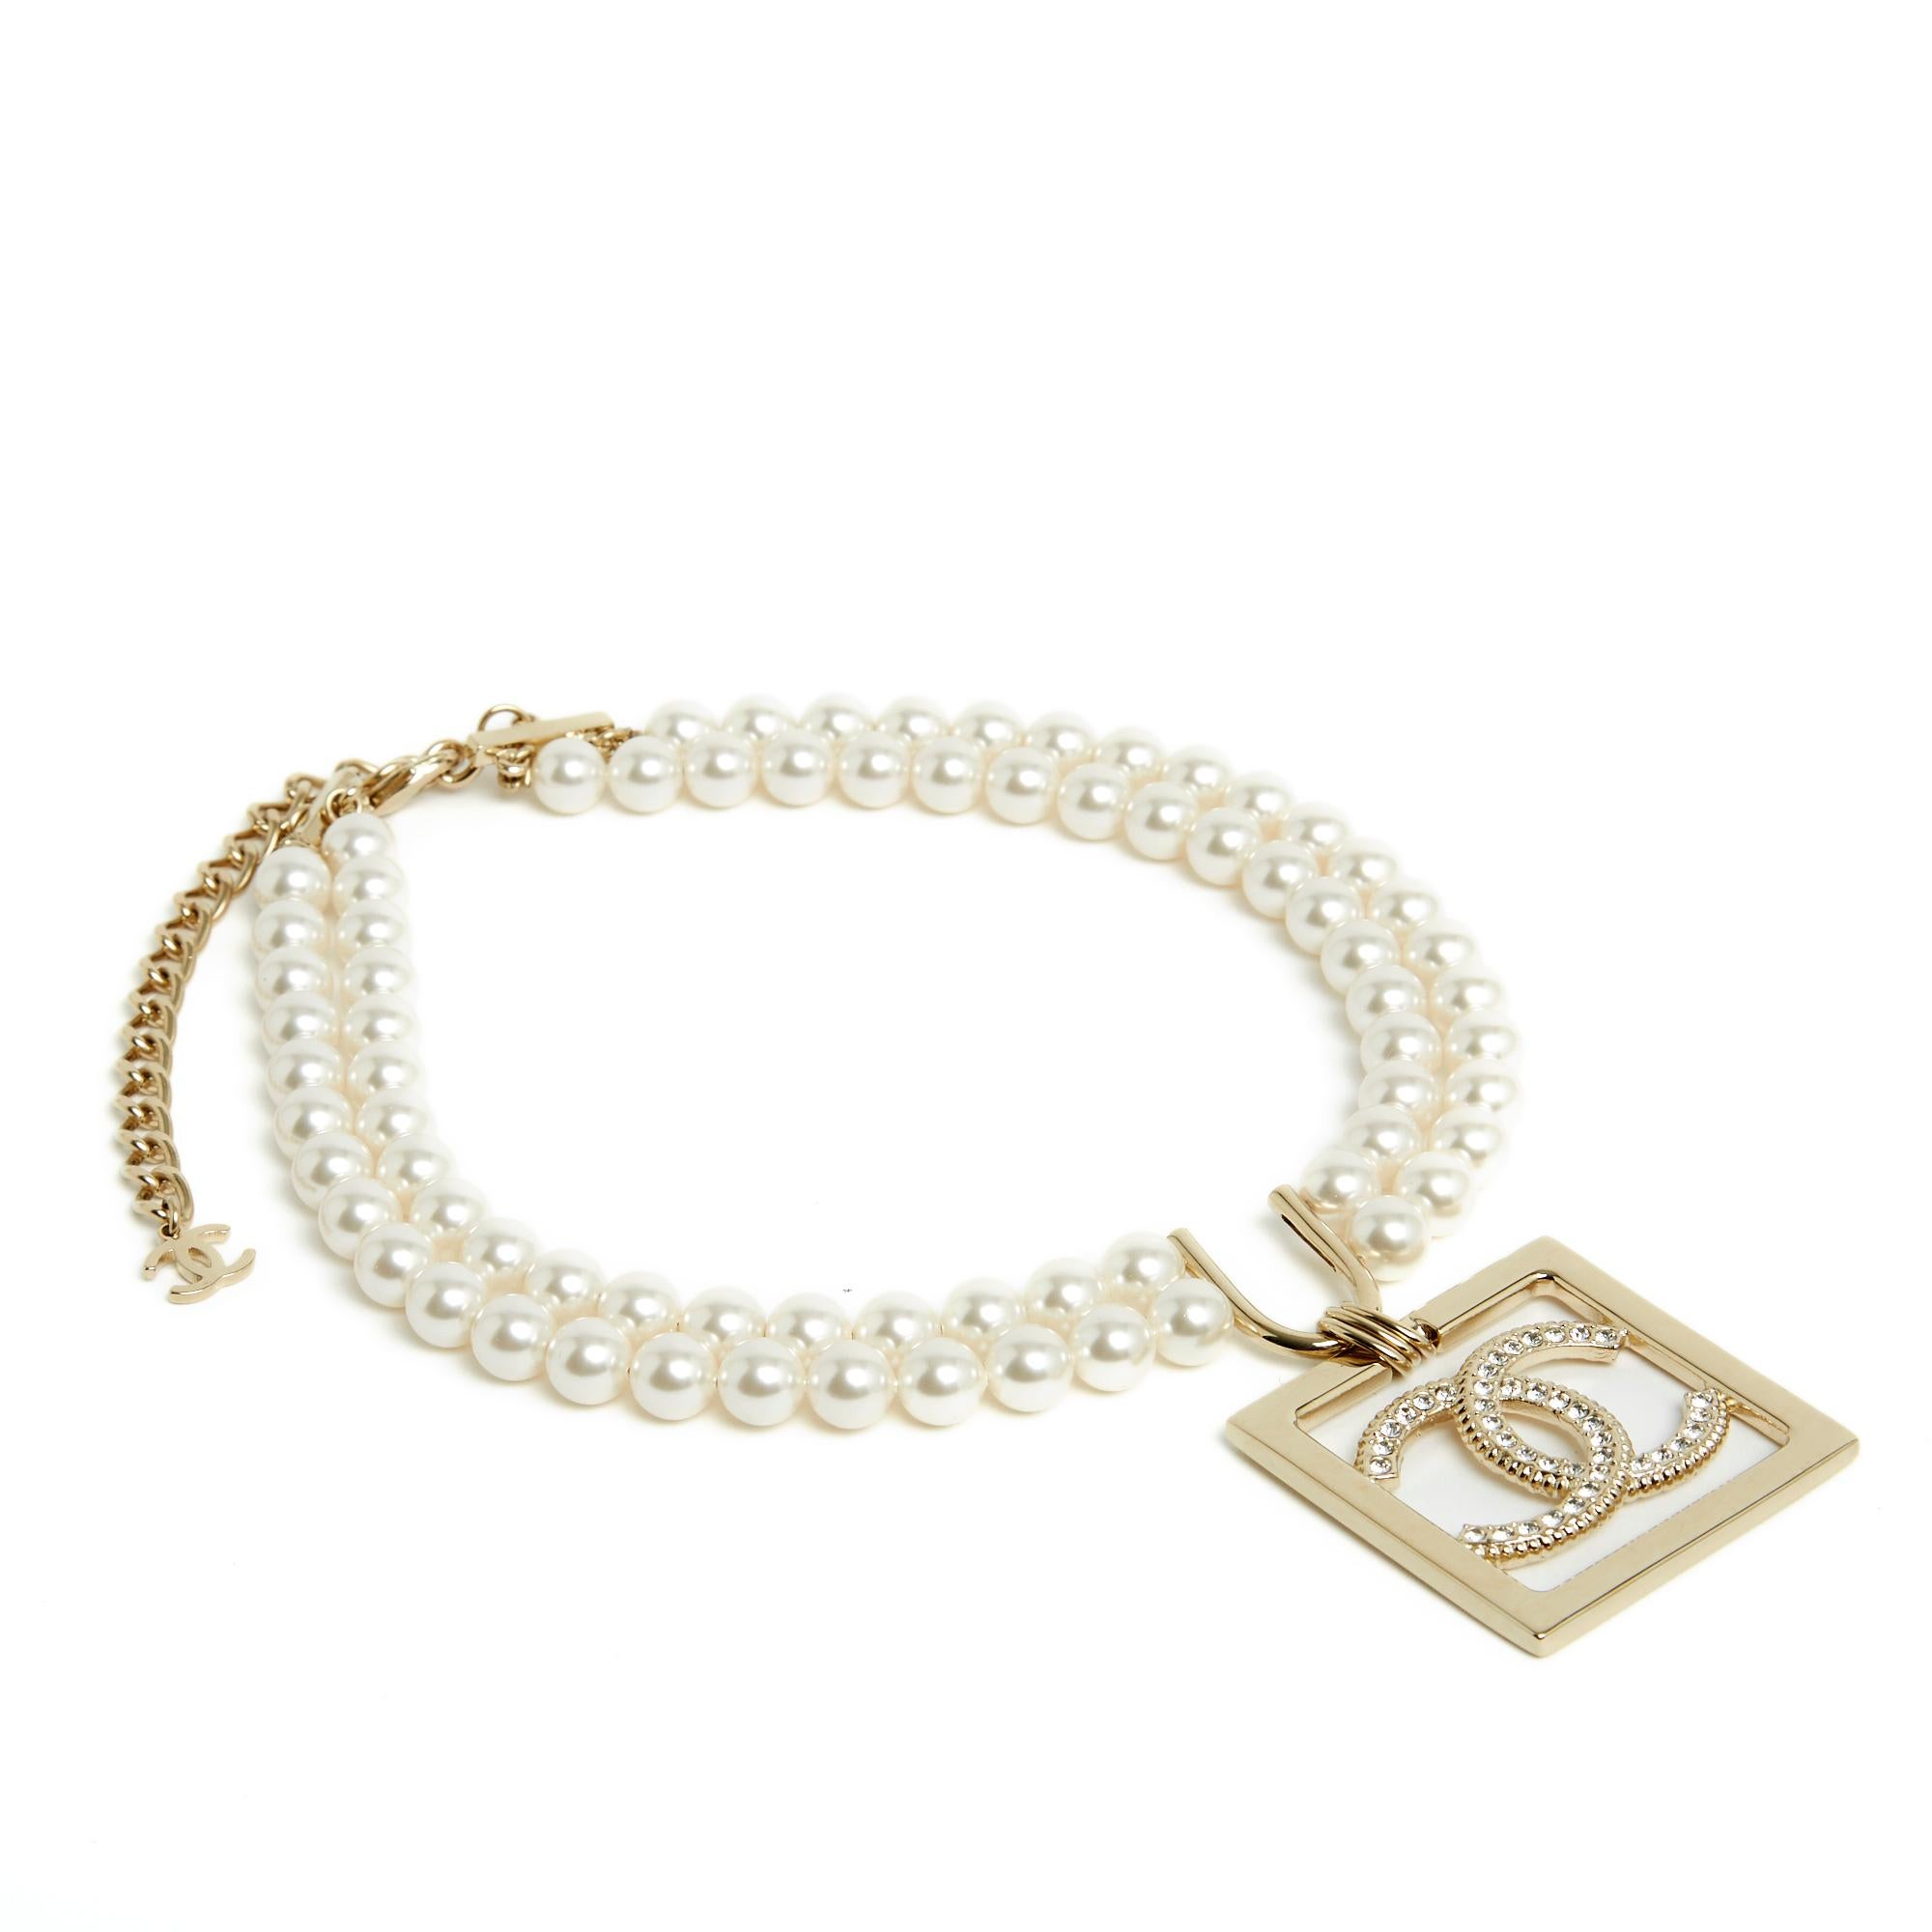 Ensemble Chanel, collection SS2023, composé d'un collier ras de cou à 2 rangs de perle fantaisie blanche, motif central en métal doré avec pendentif carré orné d'un logo CC incrusté de strass blancs, s'attachant par un mousqueton sur une chaîne en